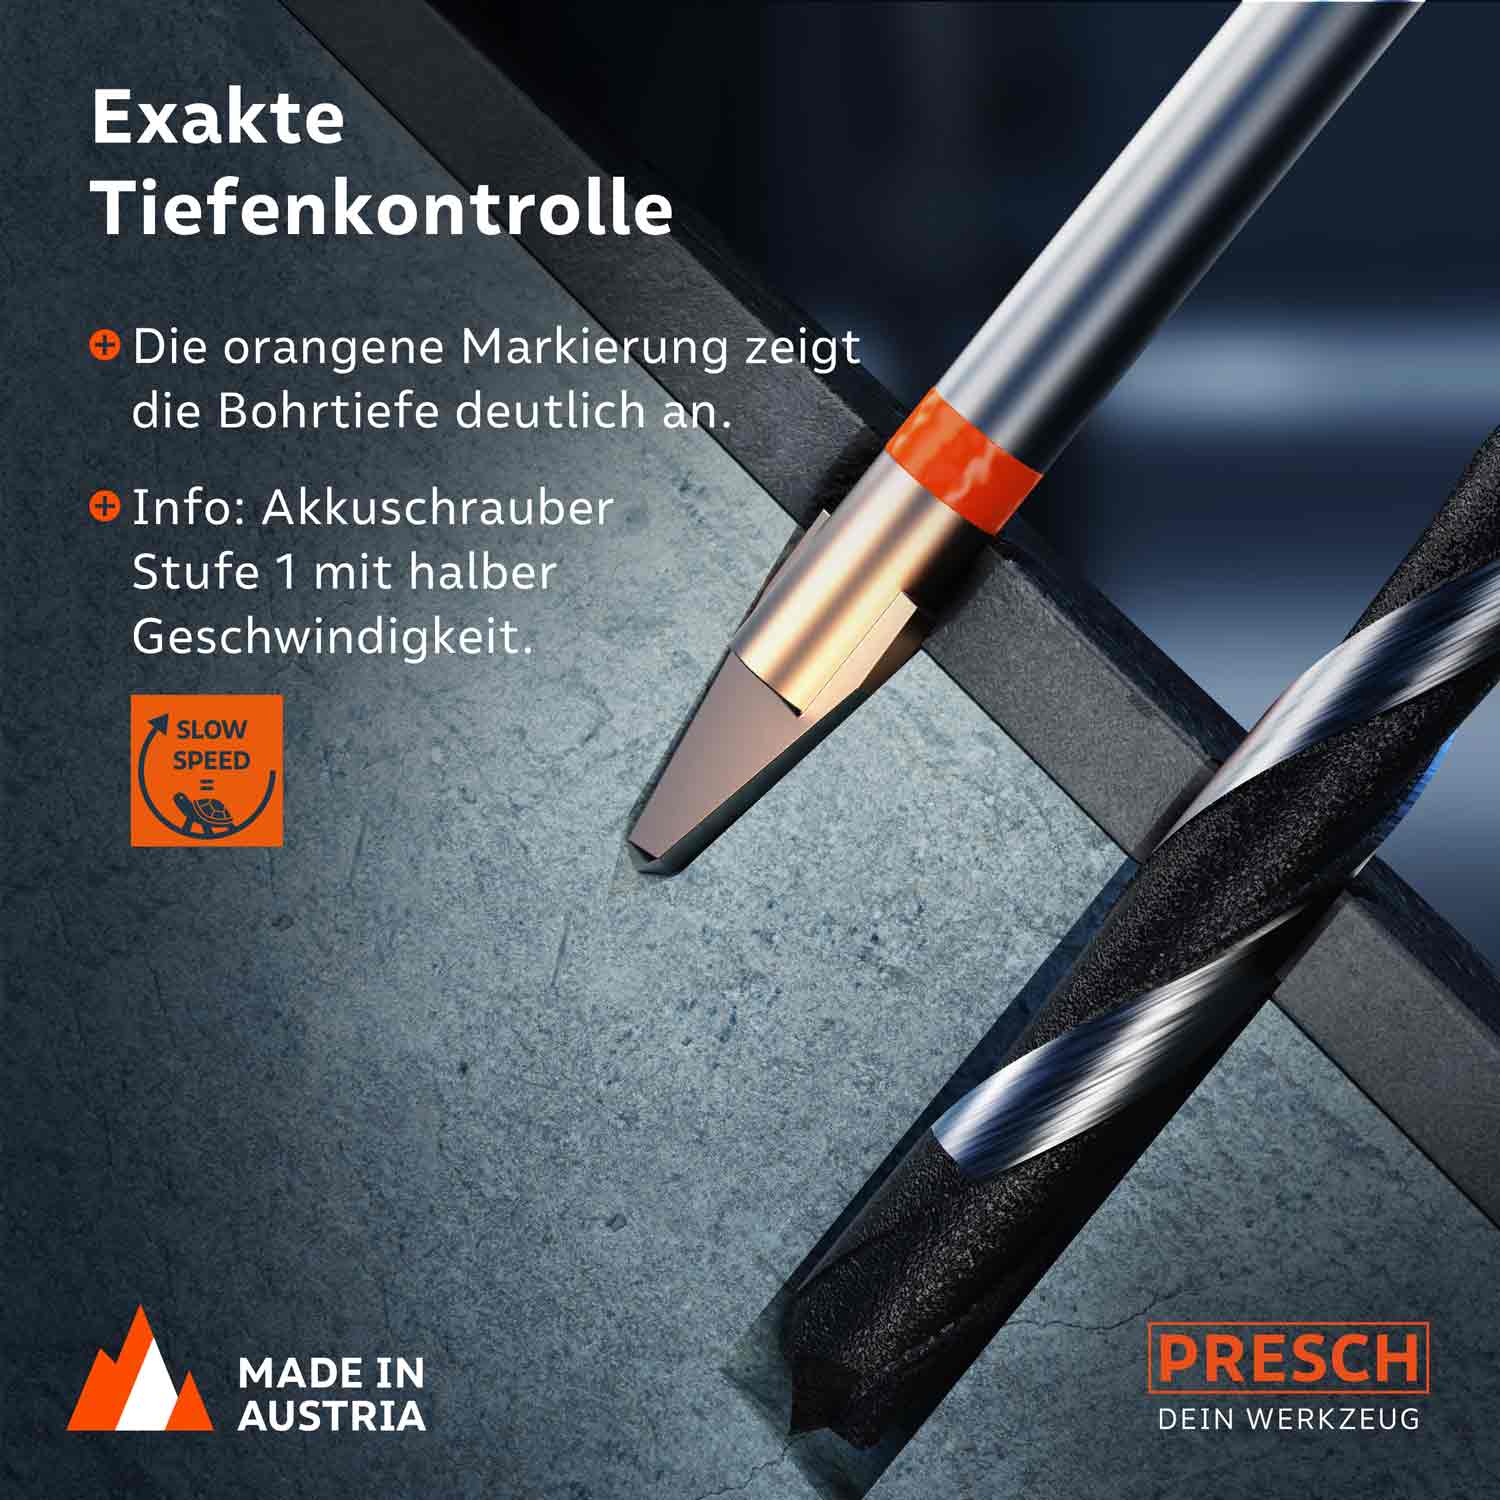 PRESCH Fliesenbohrer und Betonbohrer mit exakter Tiefenkontrolle und markanter orangener Markierung für Präzisionsarbeiten, hergestellt in Österreich.